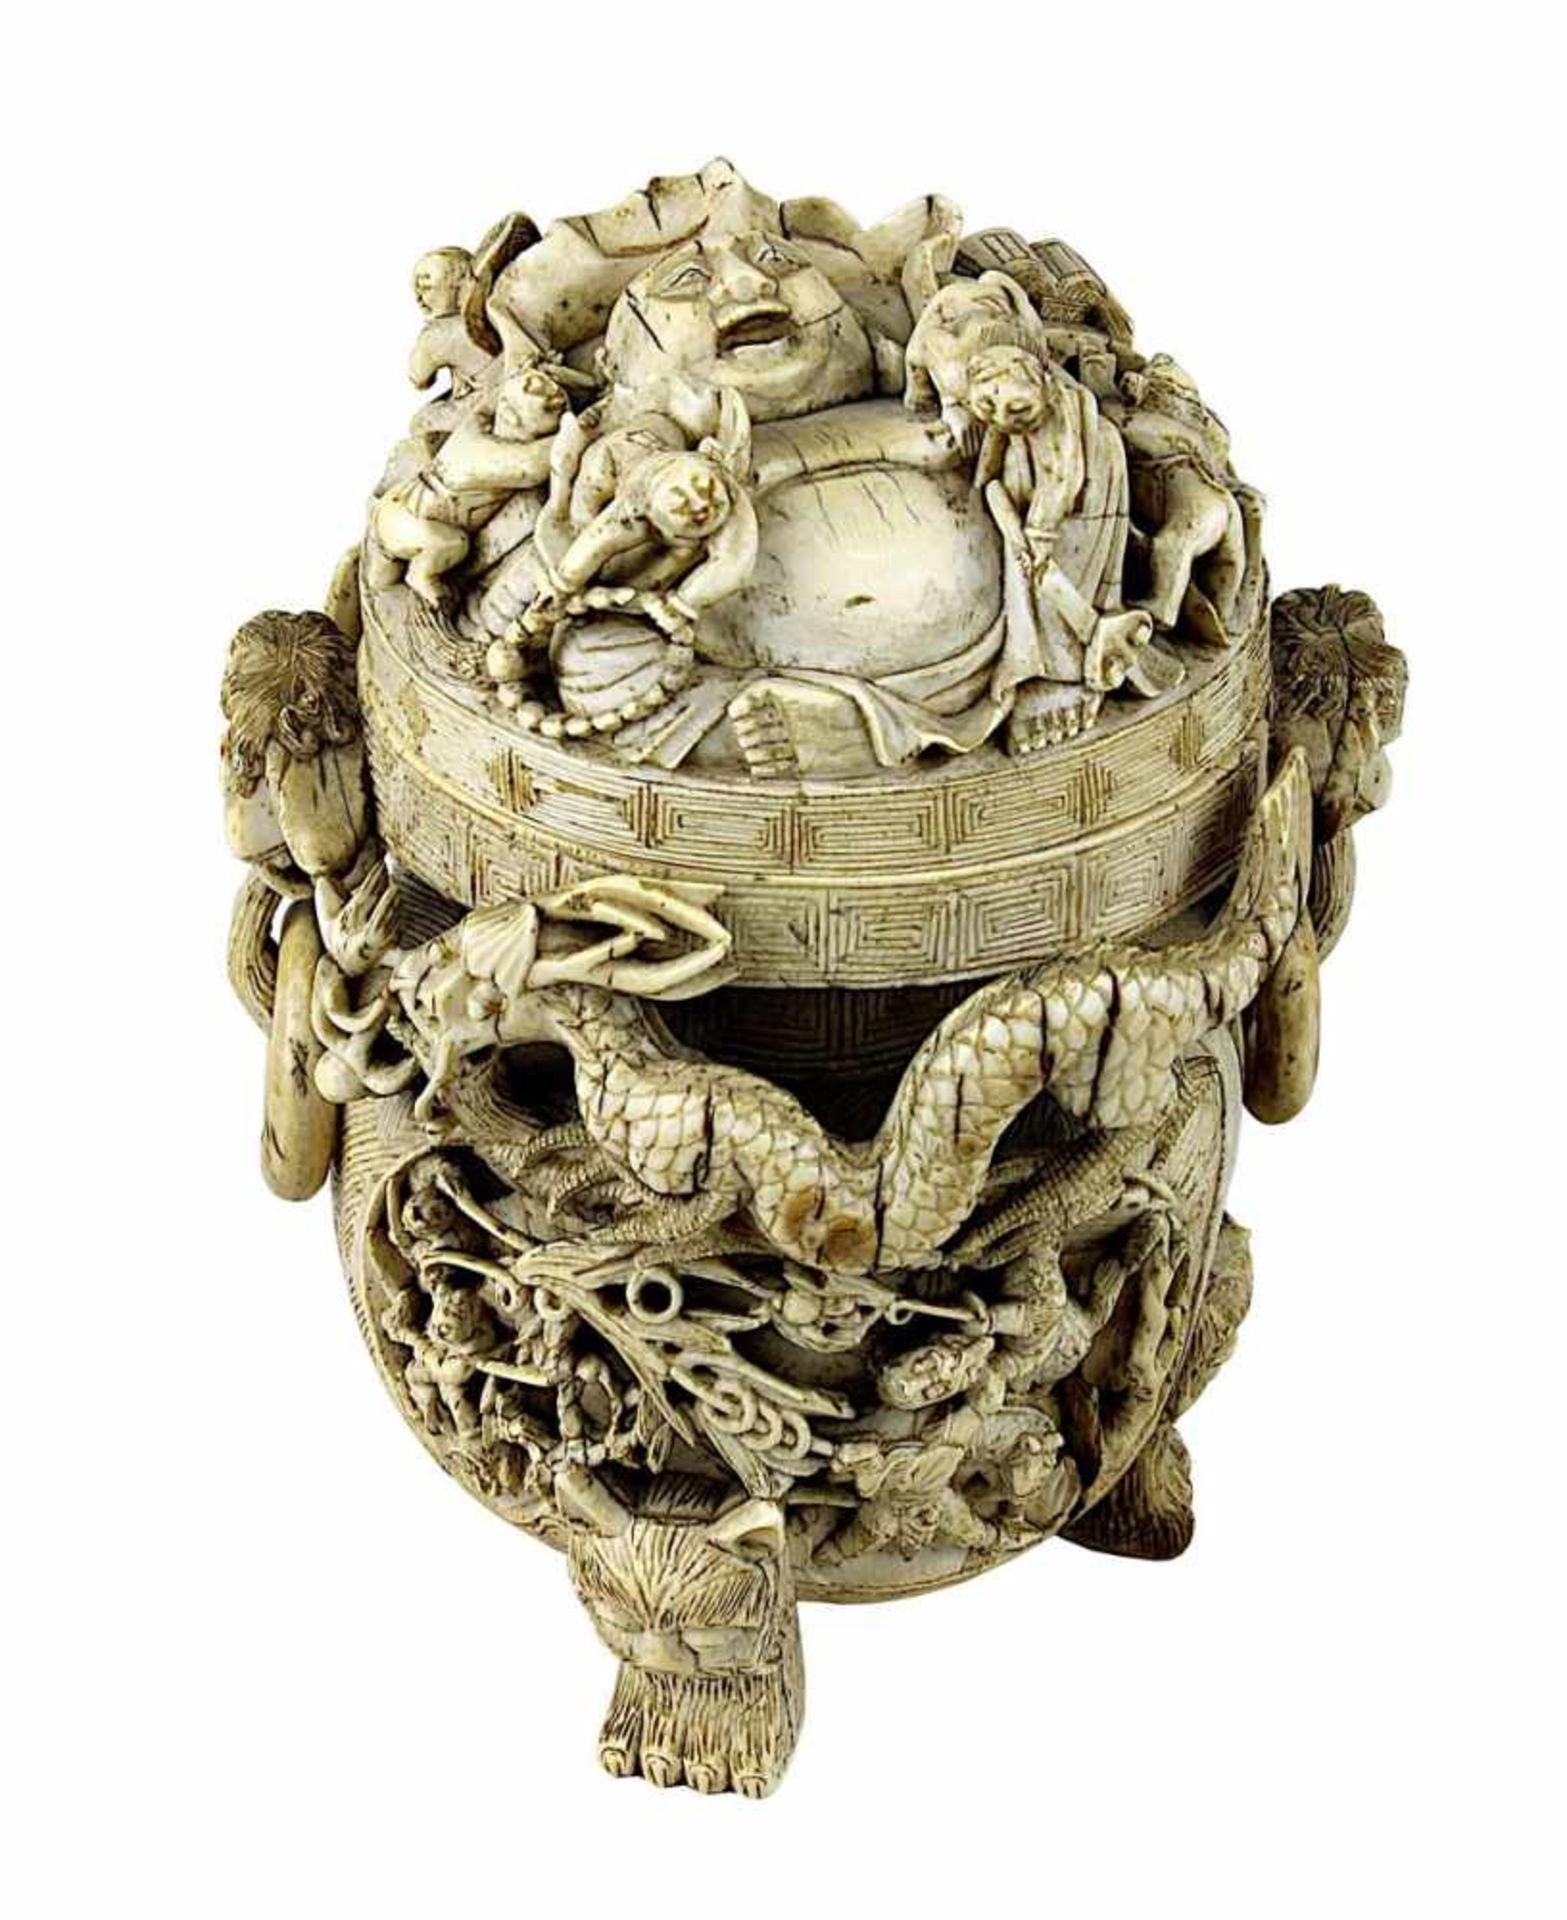 Chinesischer Koro mit Glücksbuddha, Elfenbein, 18./19. Jh., Korpus geschnitzt aus einem großen Stück